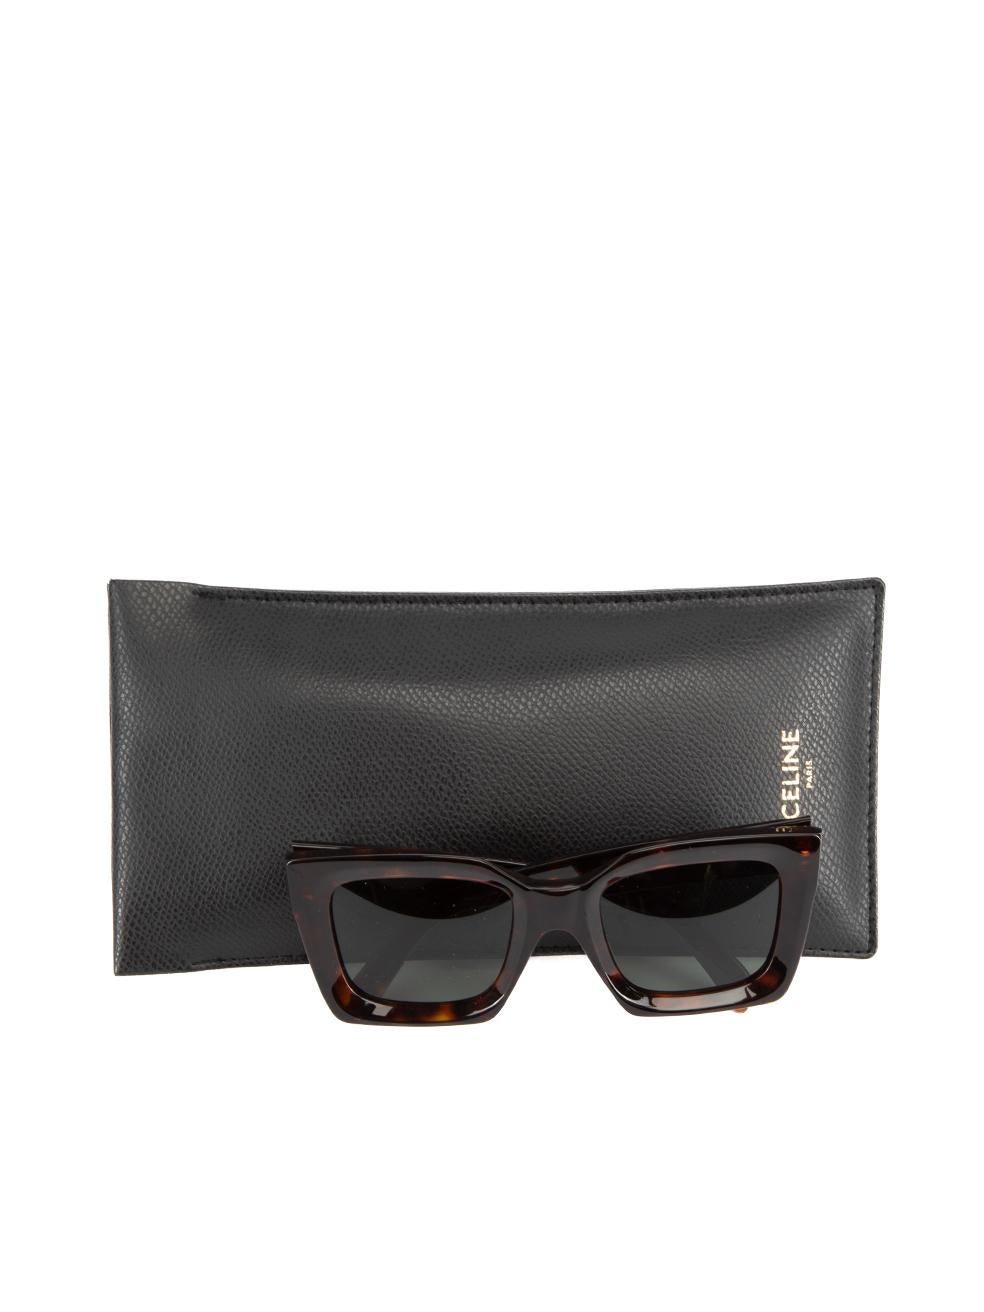 Pre-Loved Céline Women's Tortoiseshell Square Frame Sunglasses 1